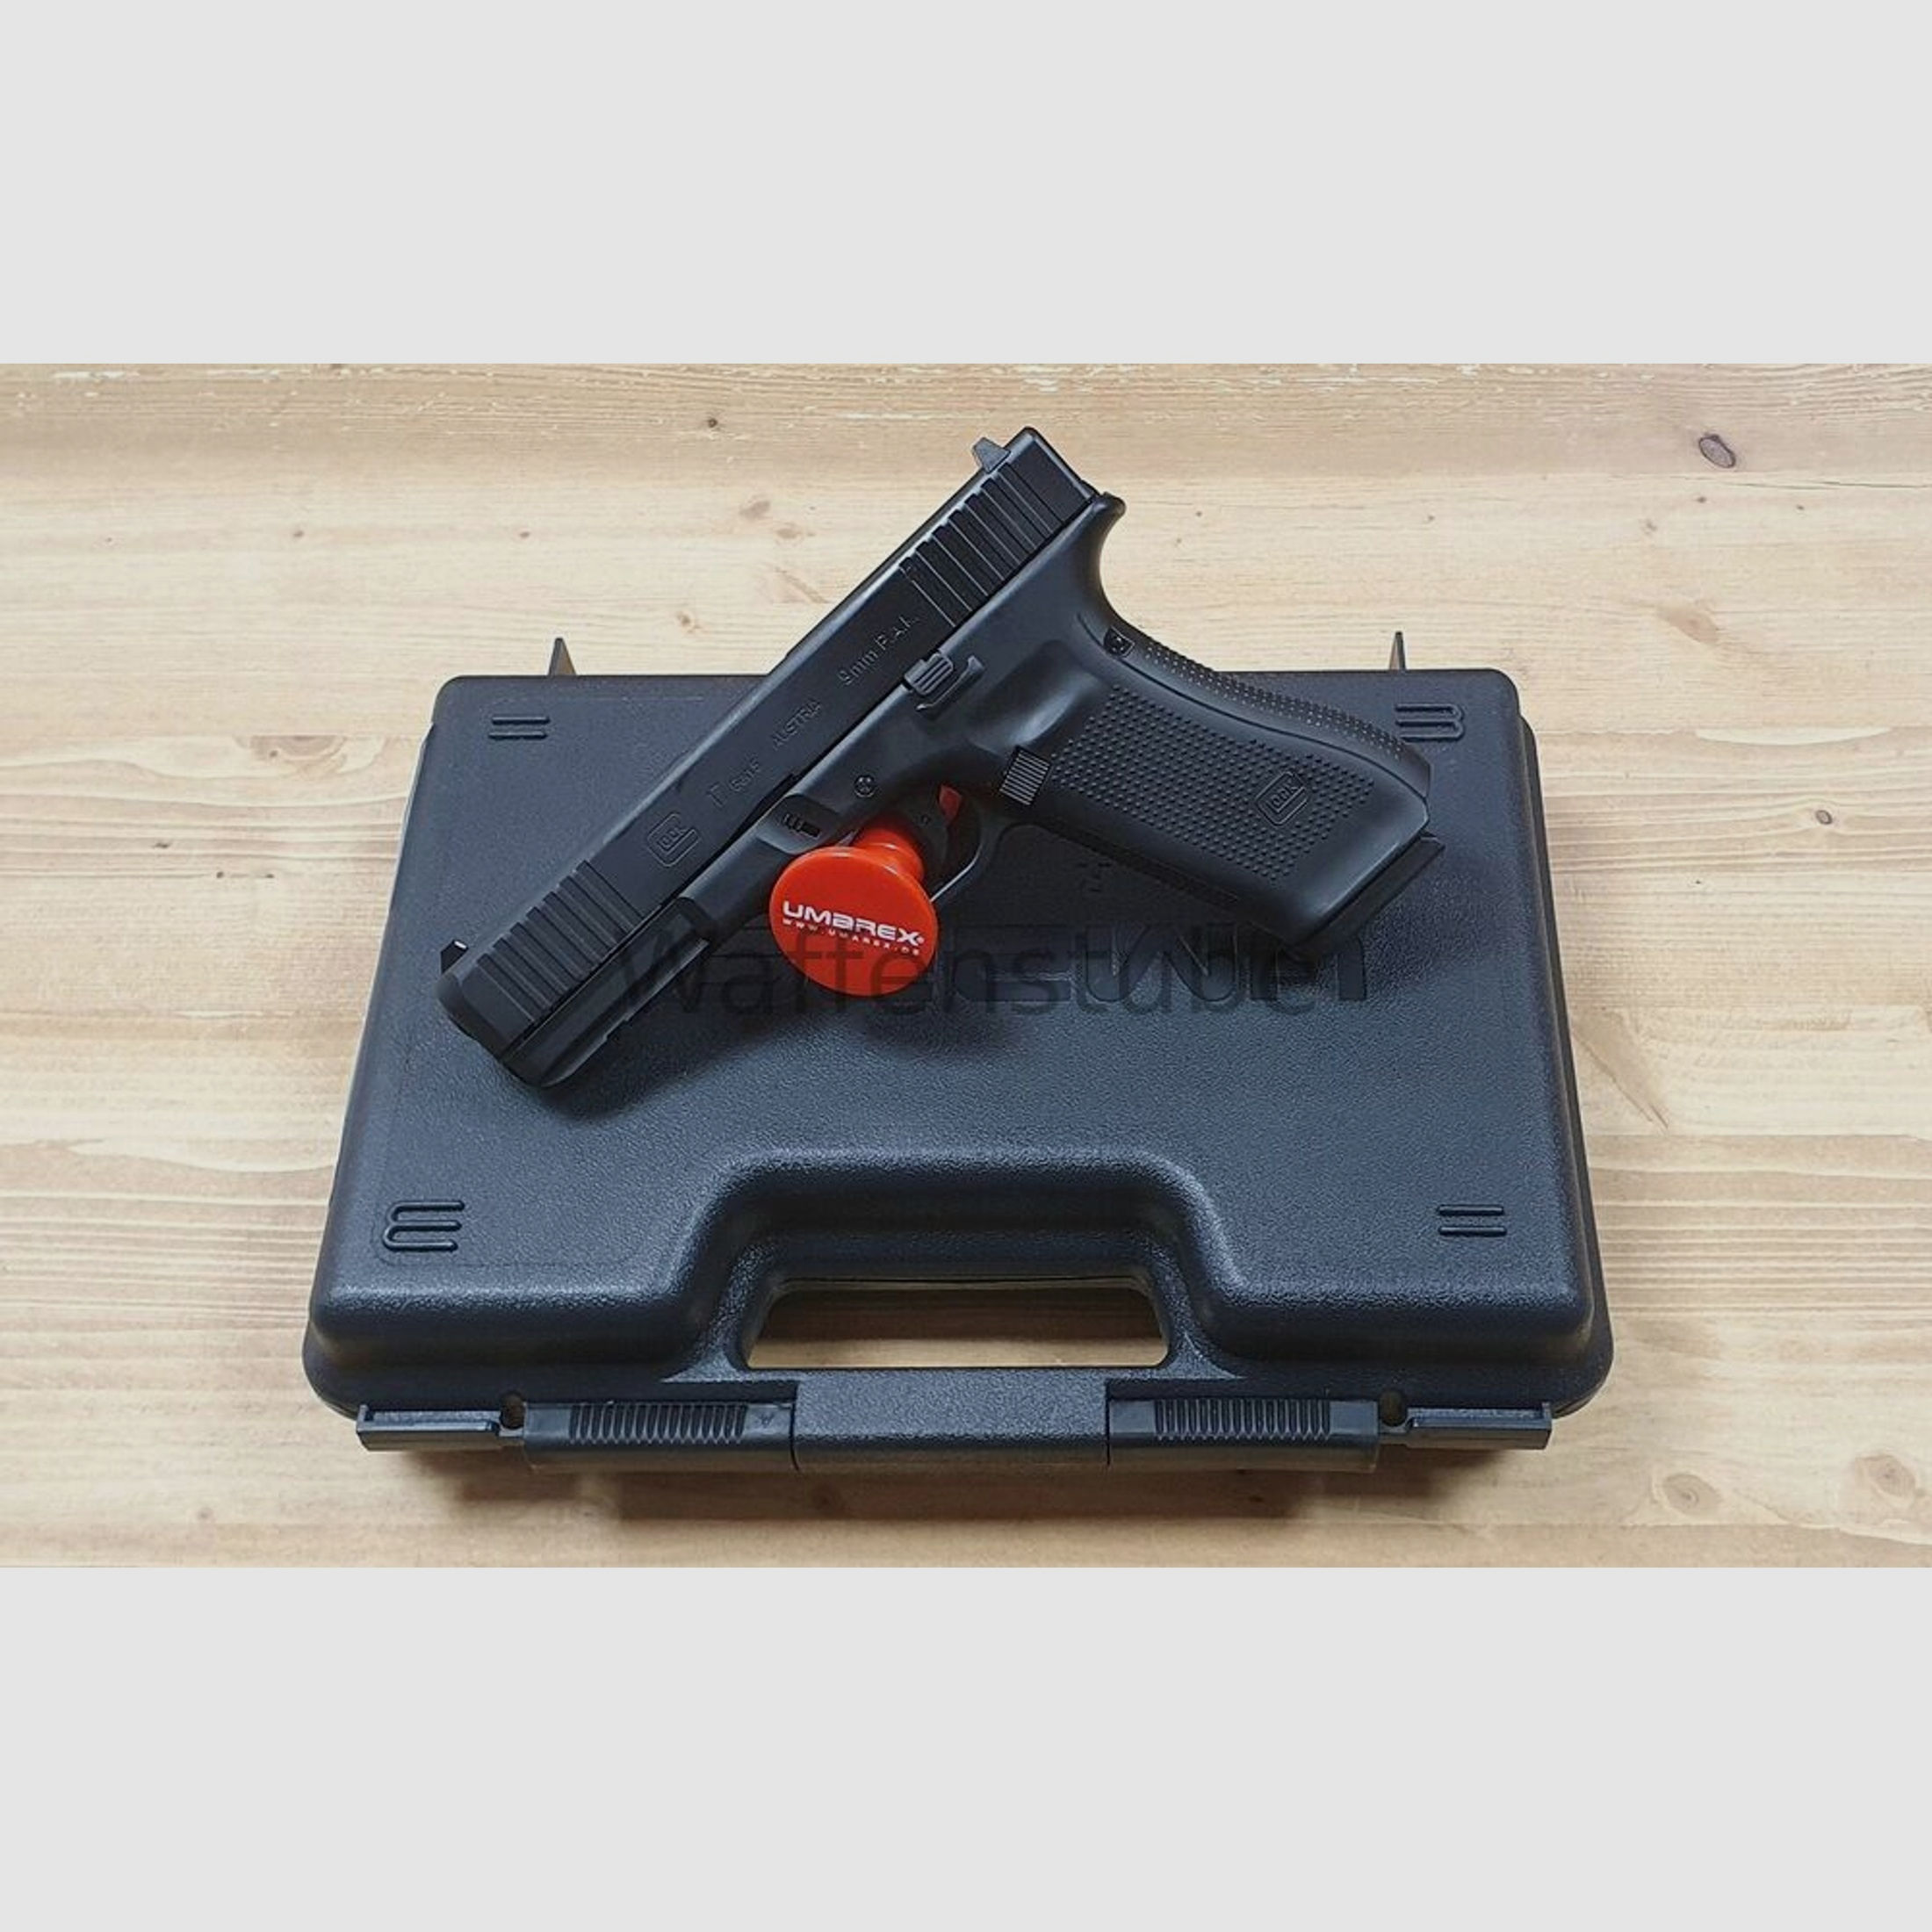 Umarex	 Glock 17 Gen5 - schwarz 9mm P.A.K